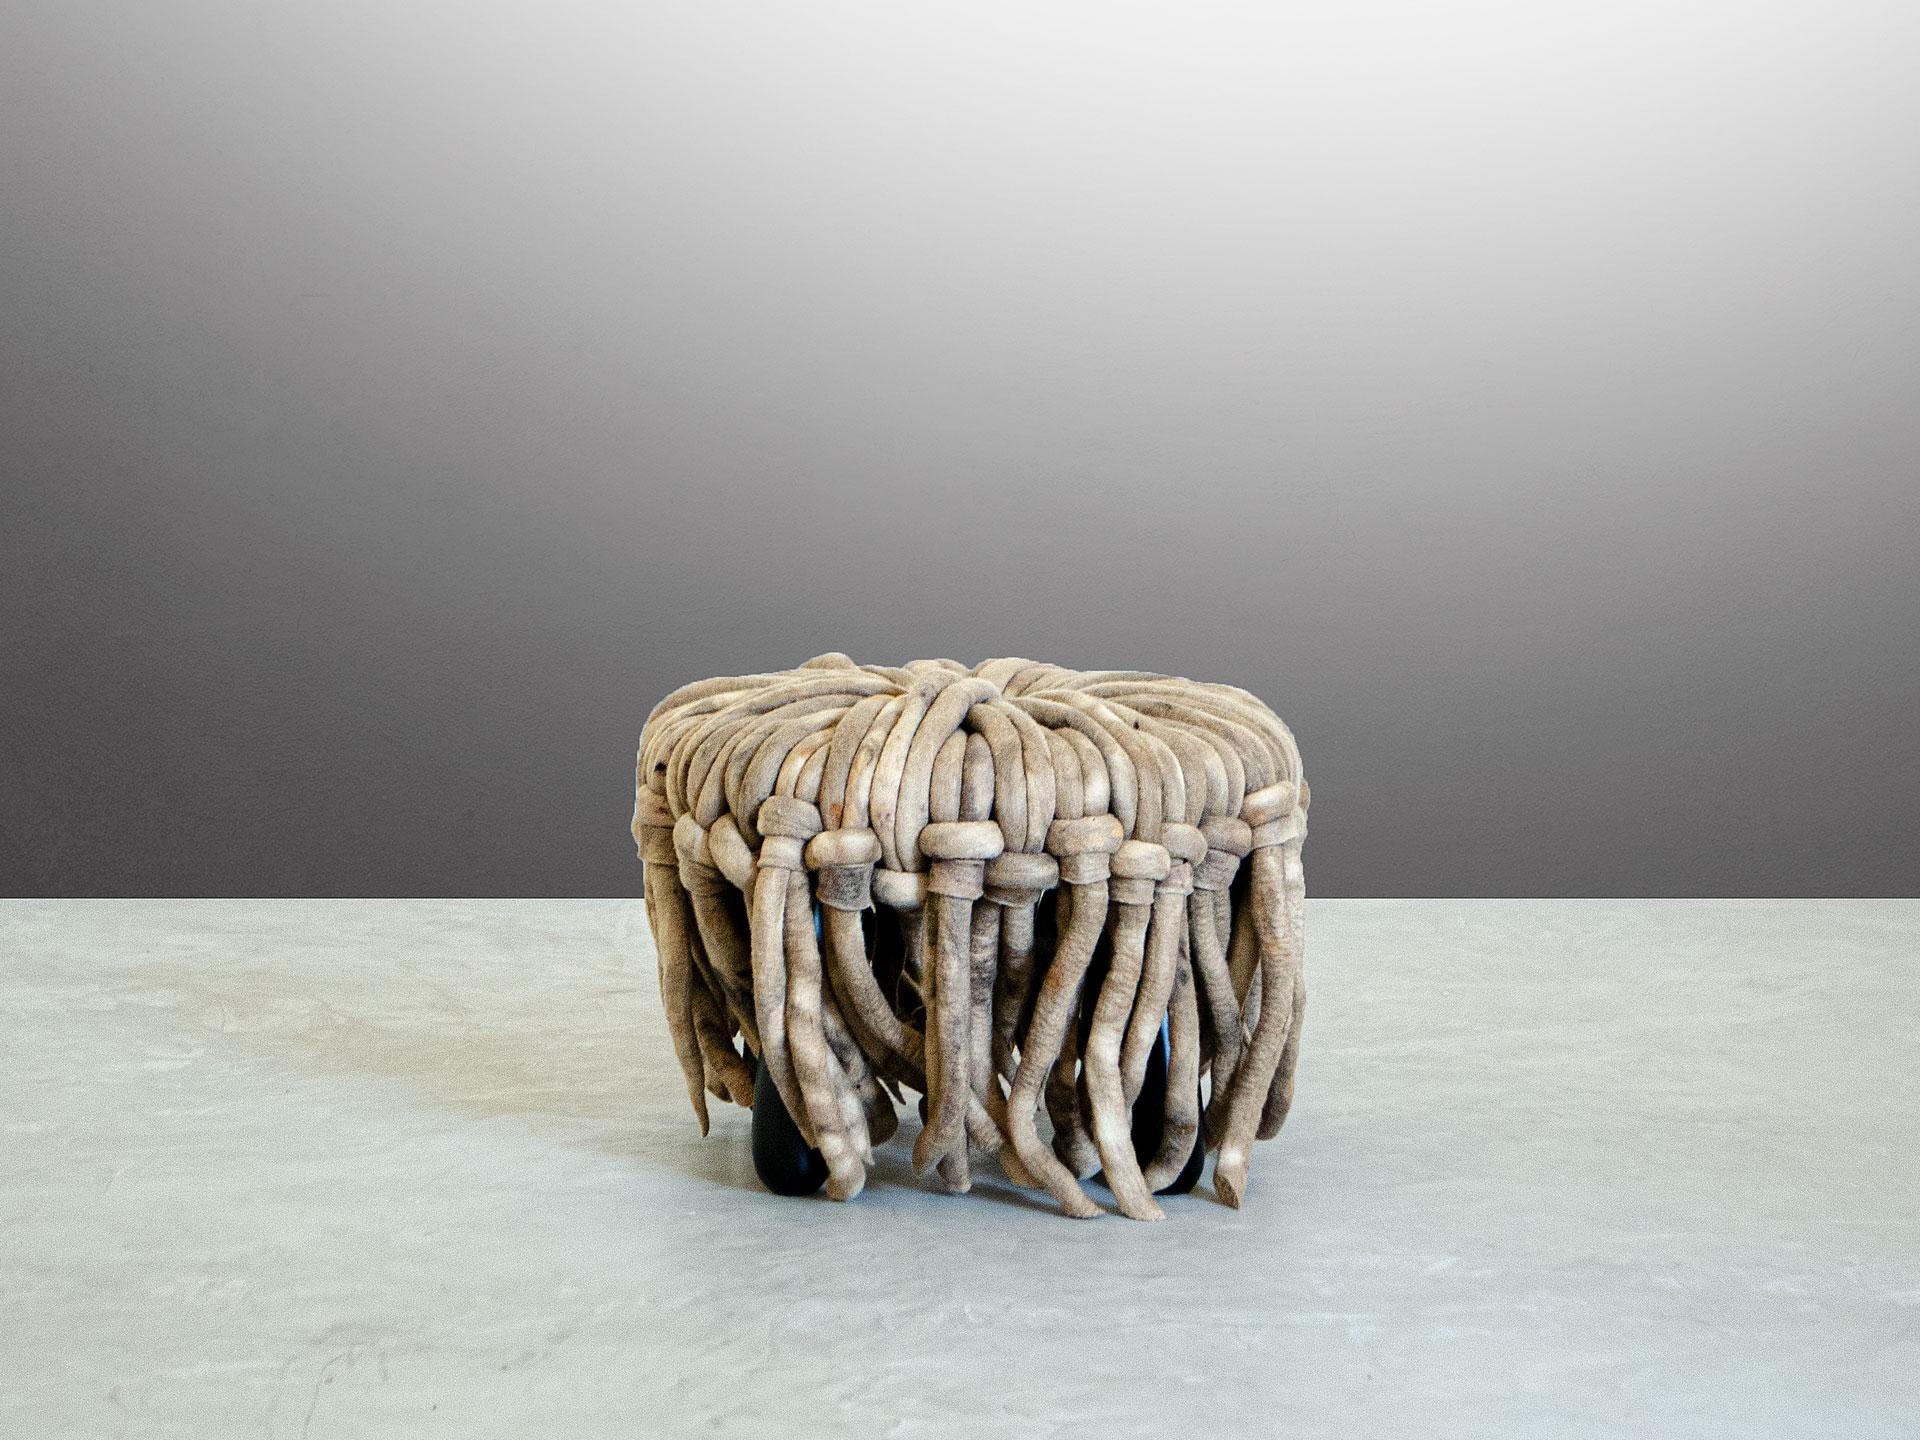 Inês Schertel ist voller Persönlichkeit und kreiert einzigartige Stücke, indem sie alte Techniken zur Verarbeitung von Schafwolle mit zeitgenössischem Design und Innovation verbindet. Sie gilt als einer der prominentesten Namen in der